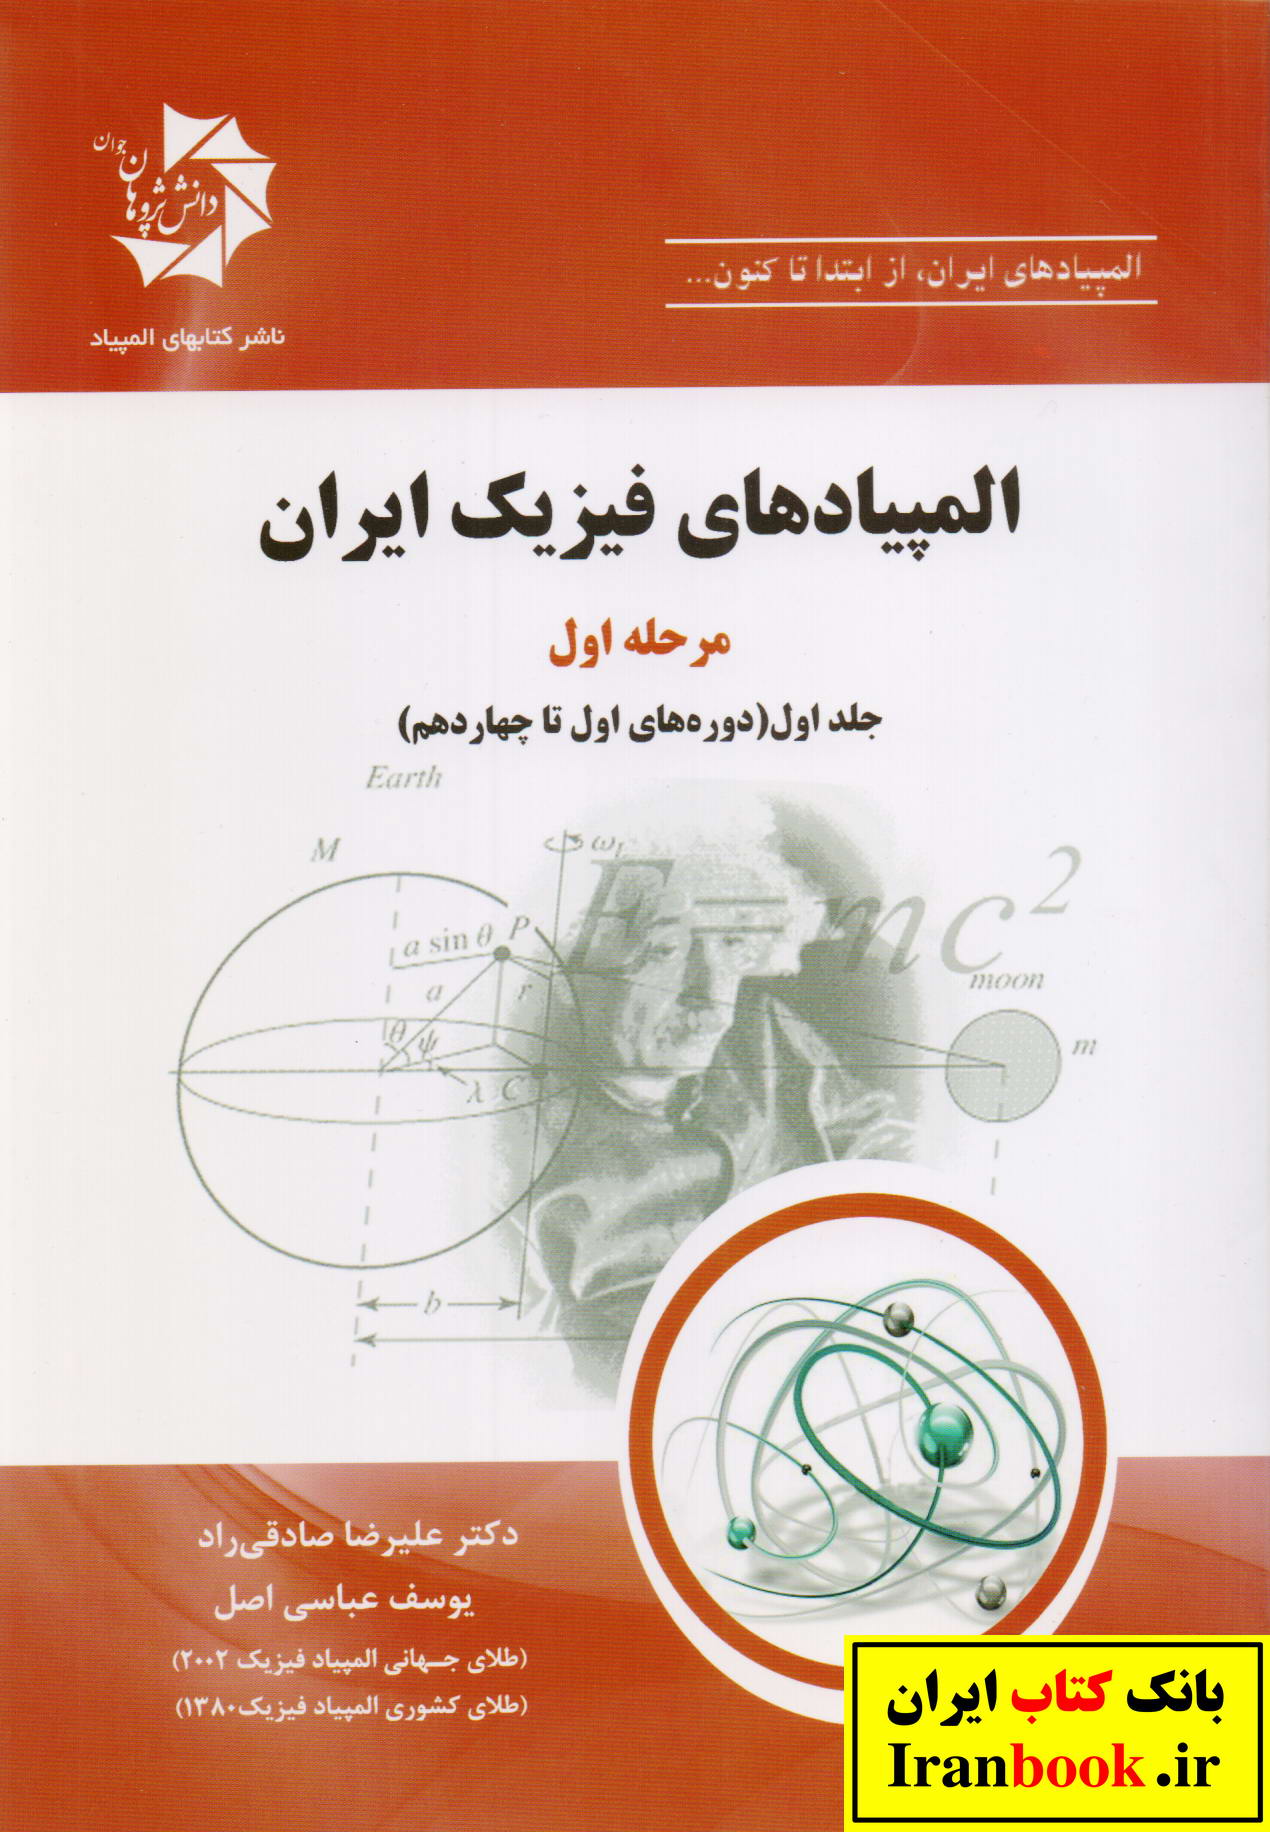 المپیاد های فیزیک ایران مرحله اول جلد اول دوره های اول تا چهاردهم انتشارات دانش پزوهان جوان